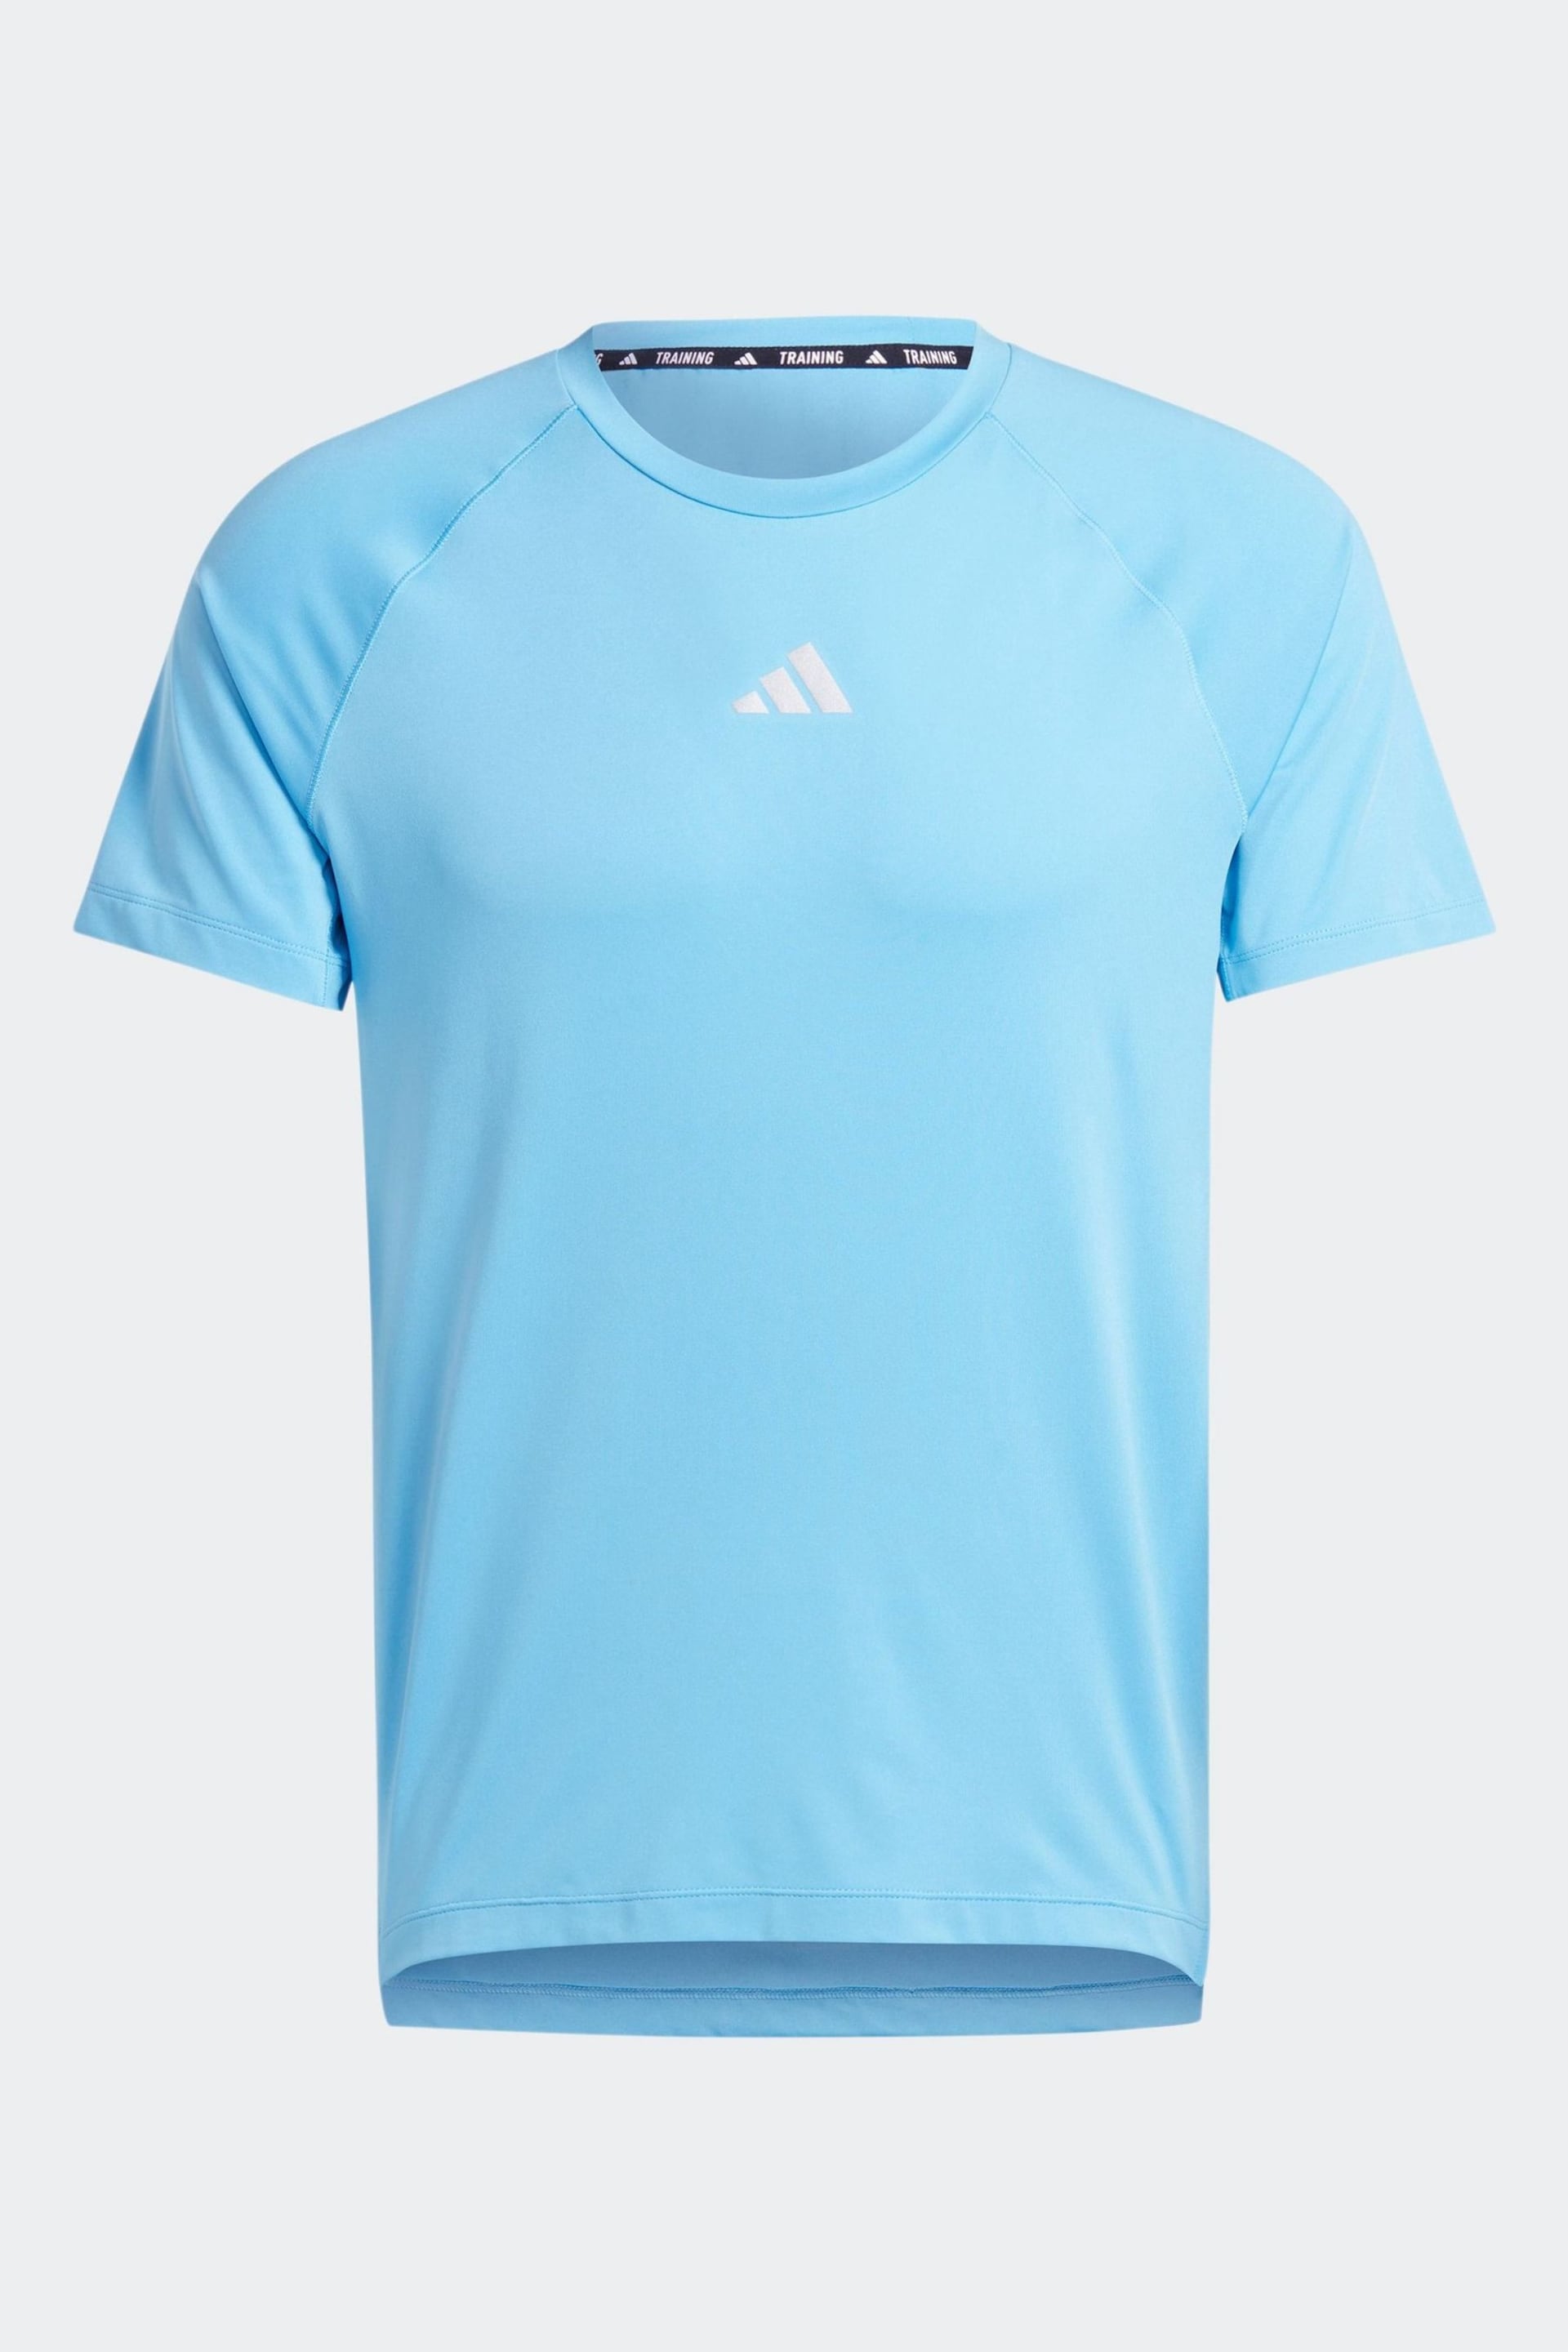 adidas Blue Gym+Training T-Shirt - Image 6 of 6